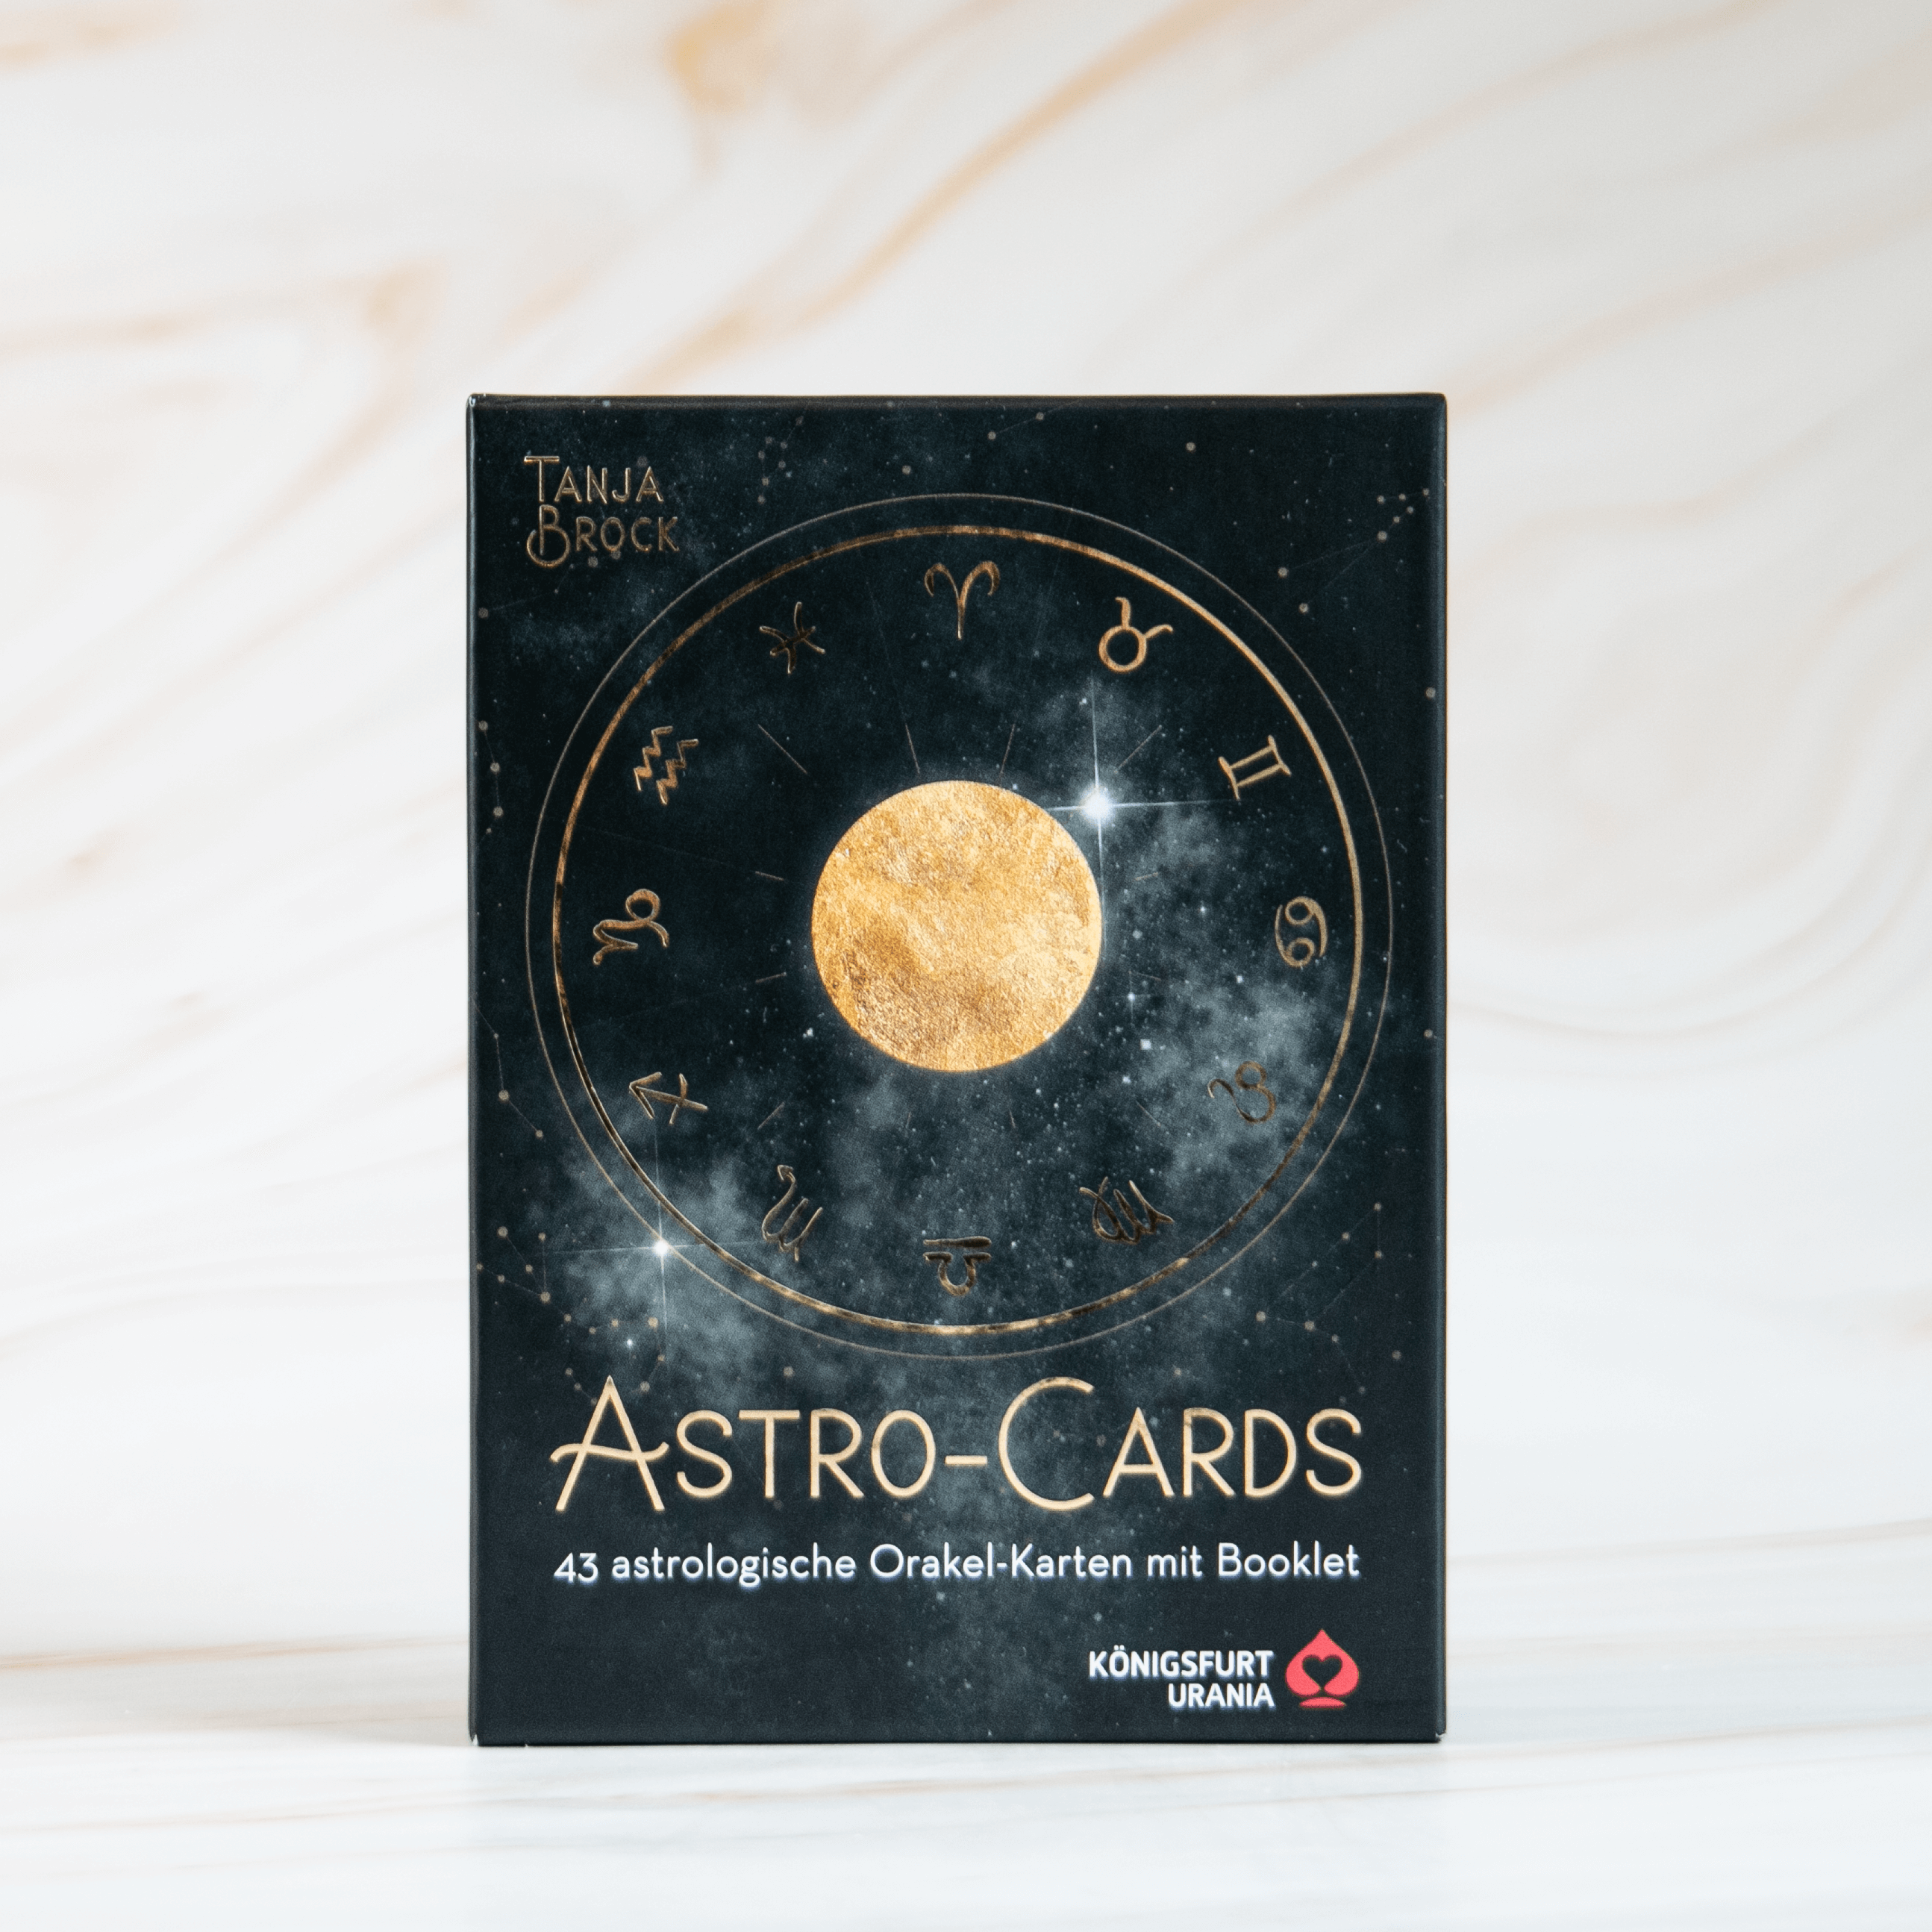 Astro Cards Tanja Brock Astrologie Sternzeichen Tarot Kartenlegen Karten Magie Hexerei Esotherik